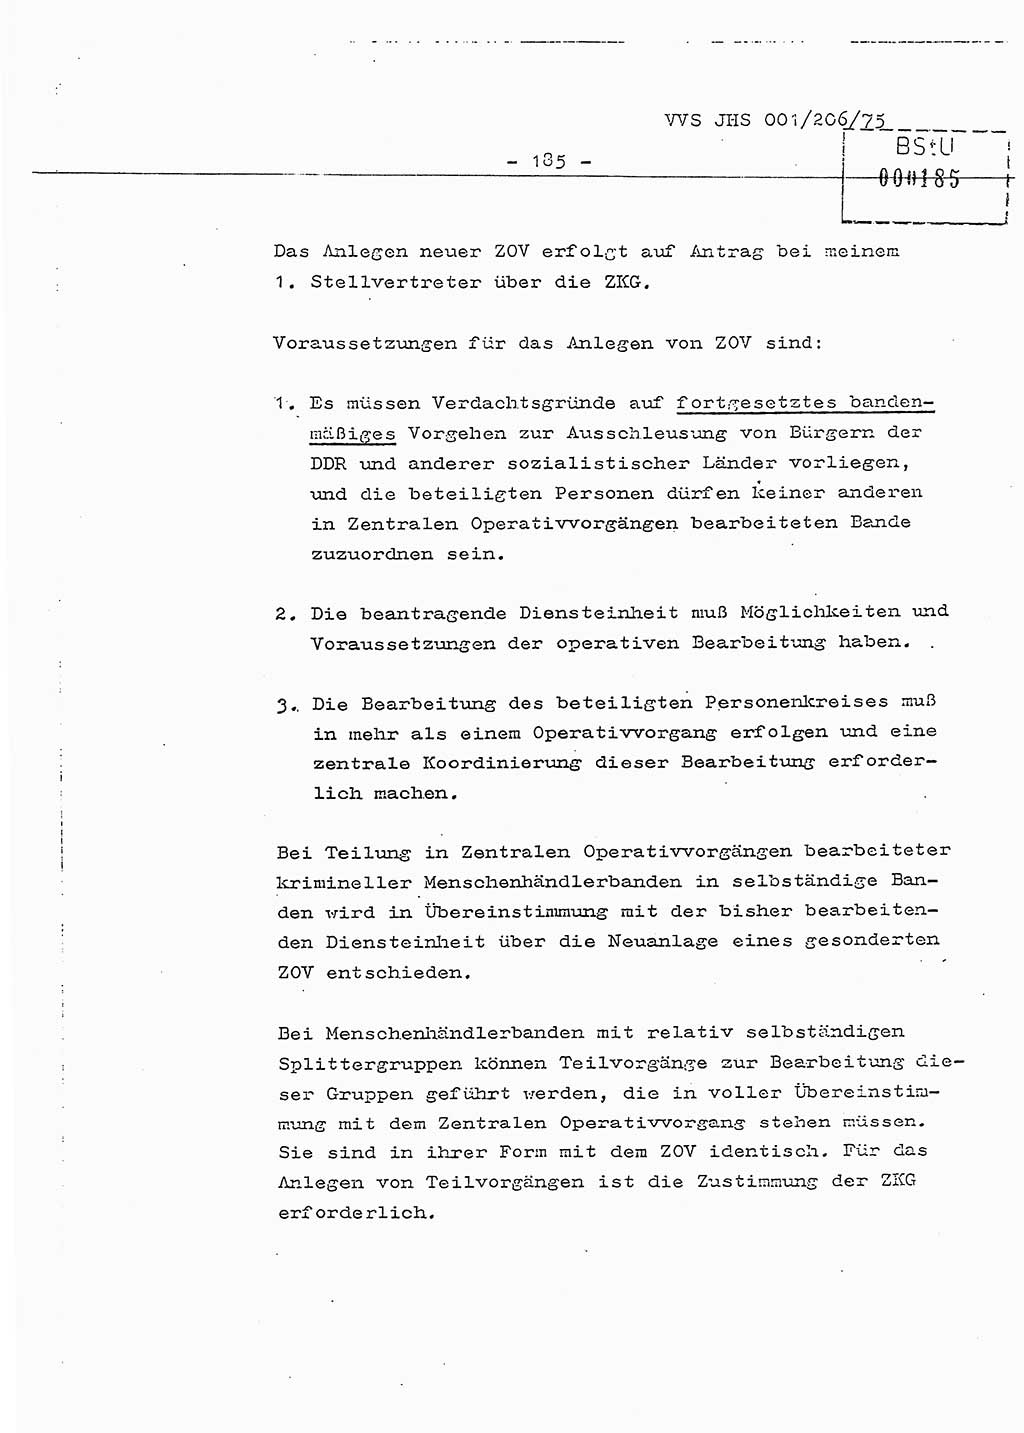 Dissertation Generalmajor Manfred Hummitzsch (Leiter der BV Leipzig), Generalmajor Heinz Fiedler (HA Ⅵ), Oberst Rolf Fister (HA Ⅸ), Ministerium für Staatssicherheit (MfS) [Deutsche Demokratische Republik (DDR)], Juristische Hochschule (JHS), Vertrauliche Verschlußsache (VVS) 001-206/75, Potsdam 1975, Seite 185 (Diss. MfS DDR JHS VVS 001-206/75 1975, S. 185)